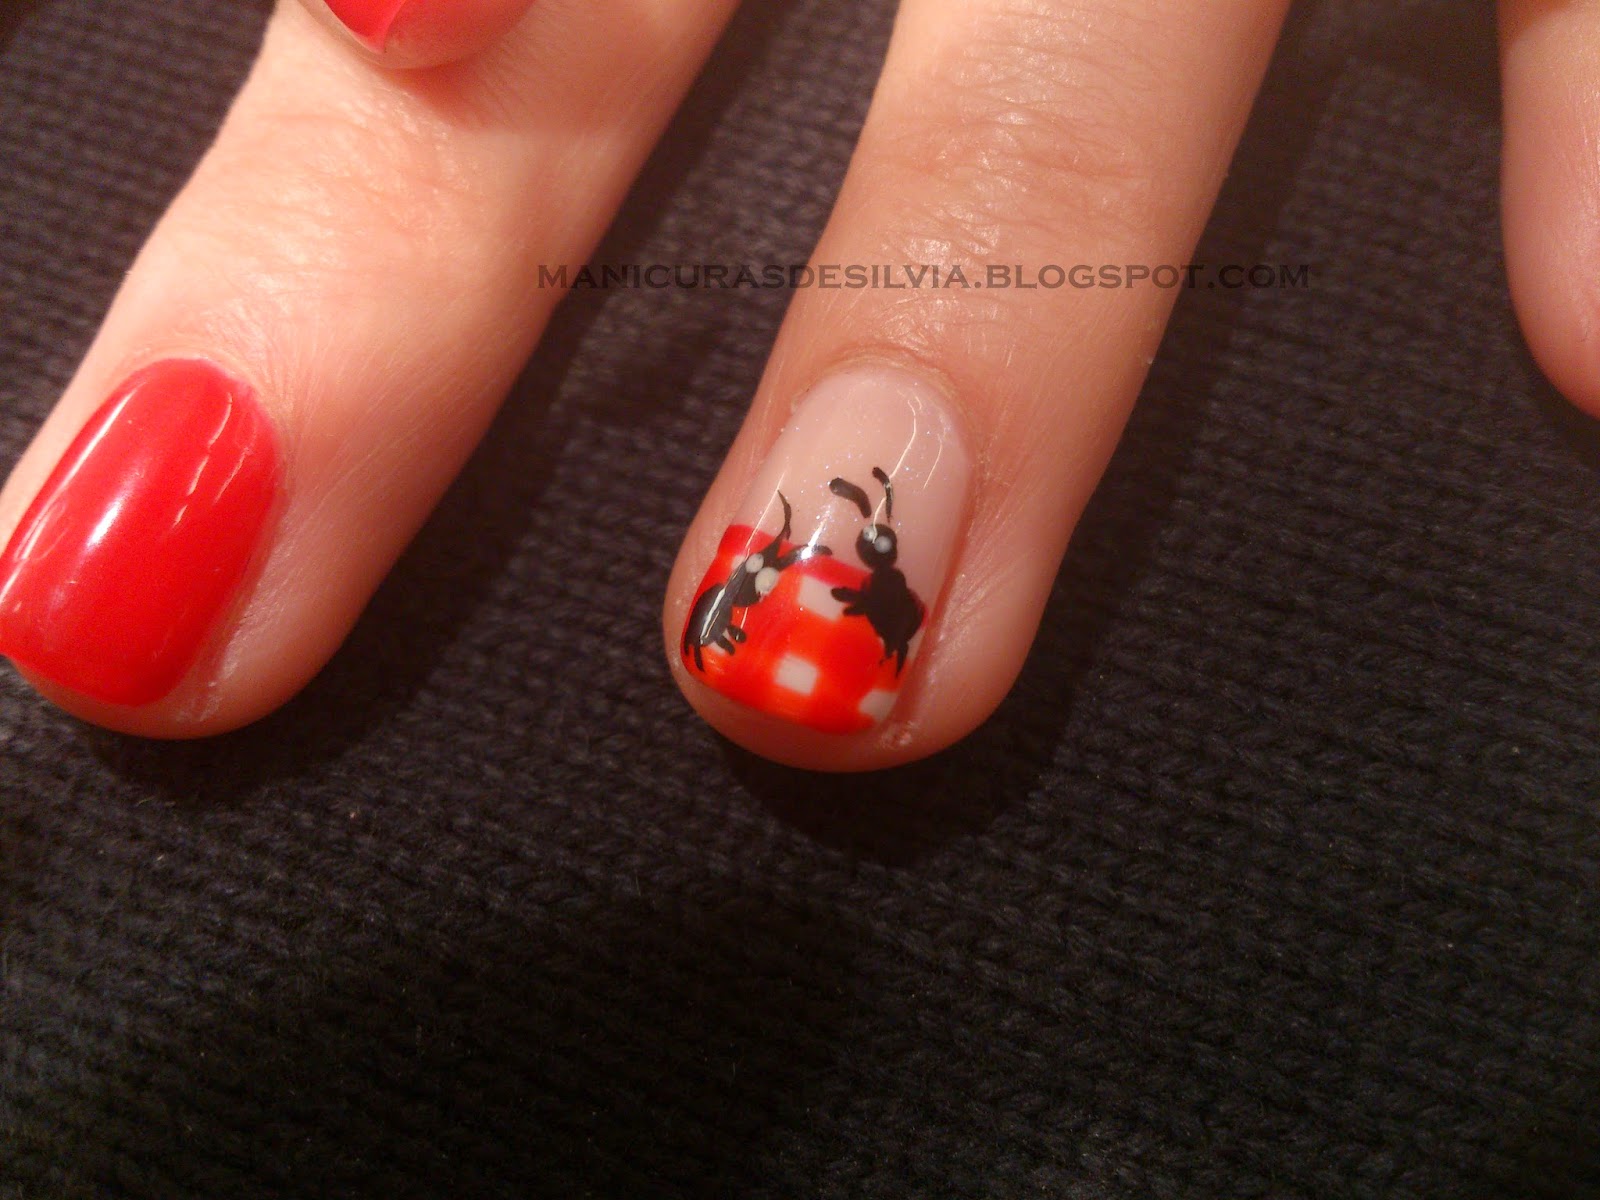 Manicuras de Silvia: ¡Hormigas en mis uñas! (Ants on my nails!)